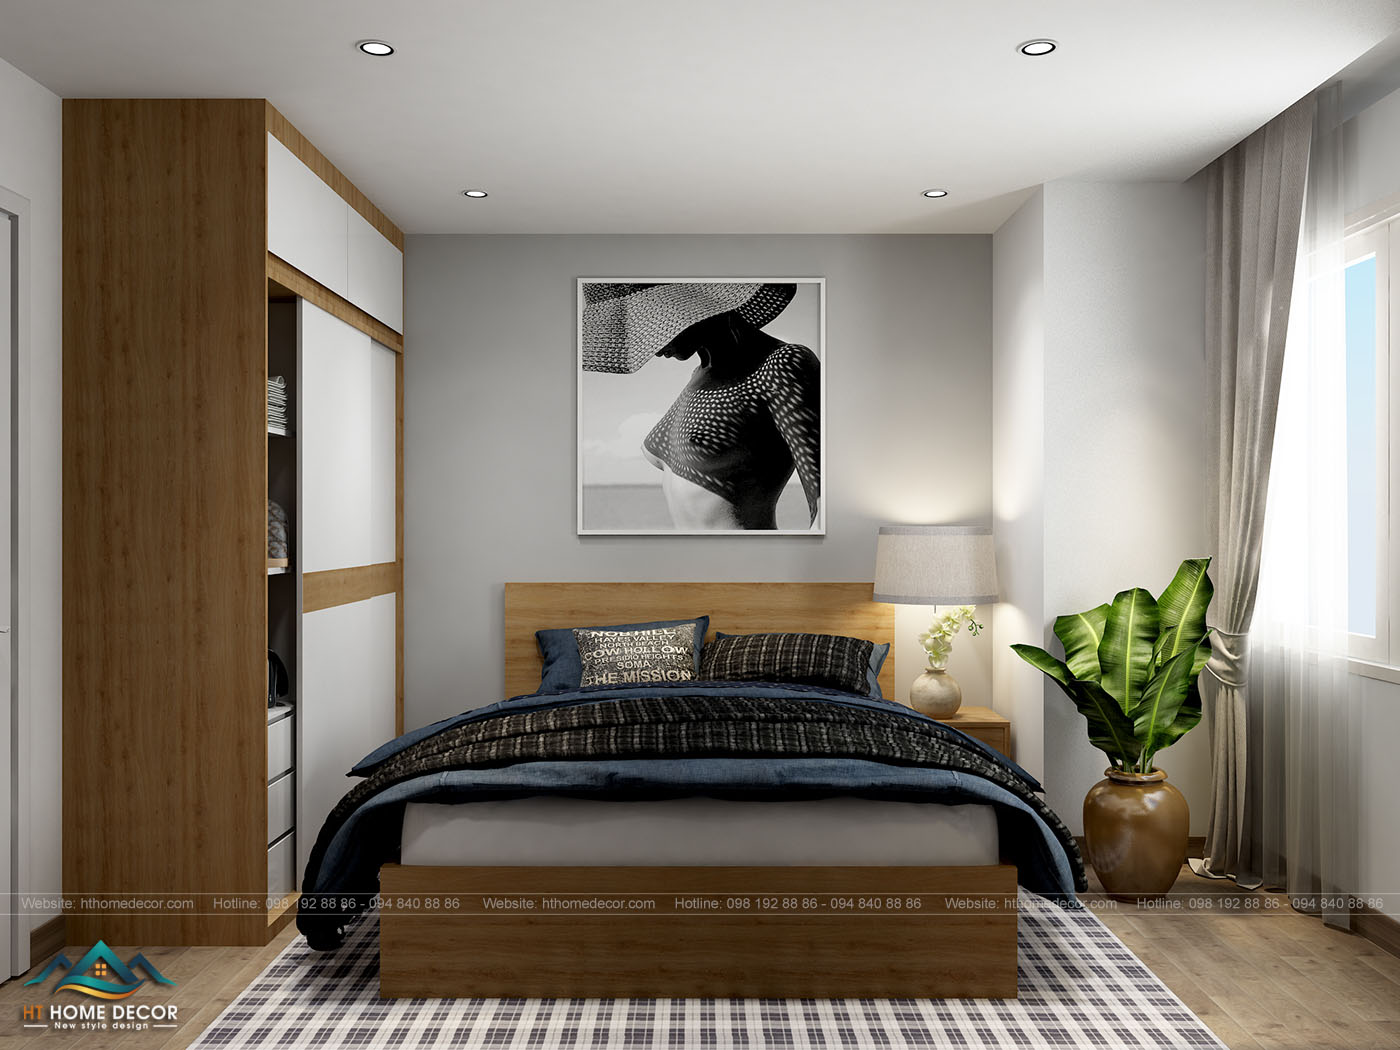 Căn phòng ngủ rộng và thoáng đãng với chậu cây xanh cạnh đầu giường. Tủ quần áo được xếp gọn một bên, tiện lợi và vô cùng hiện đại.